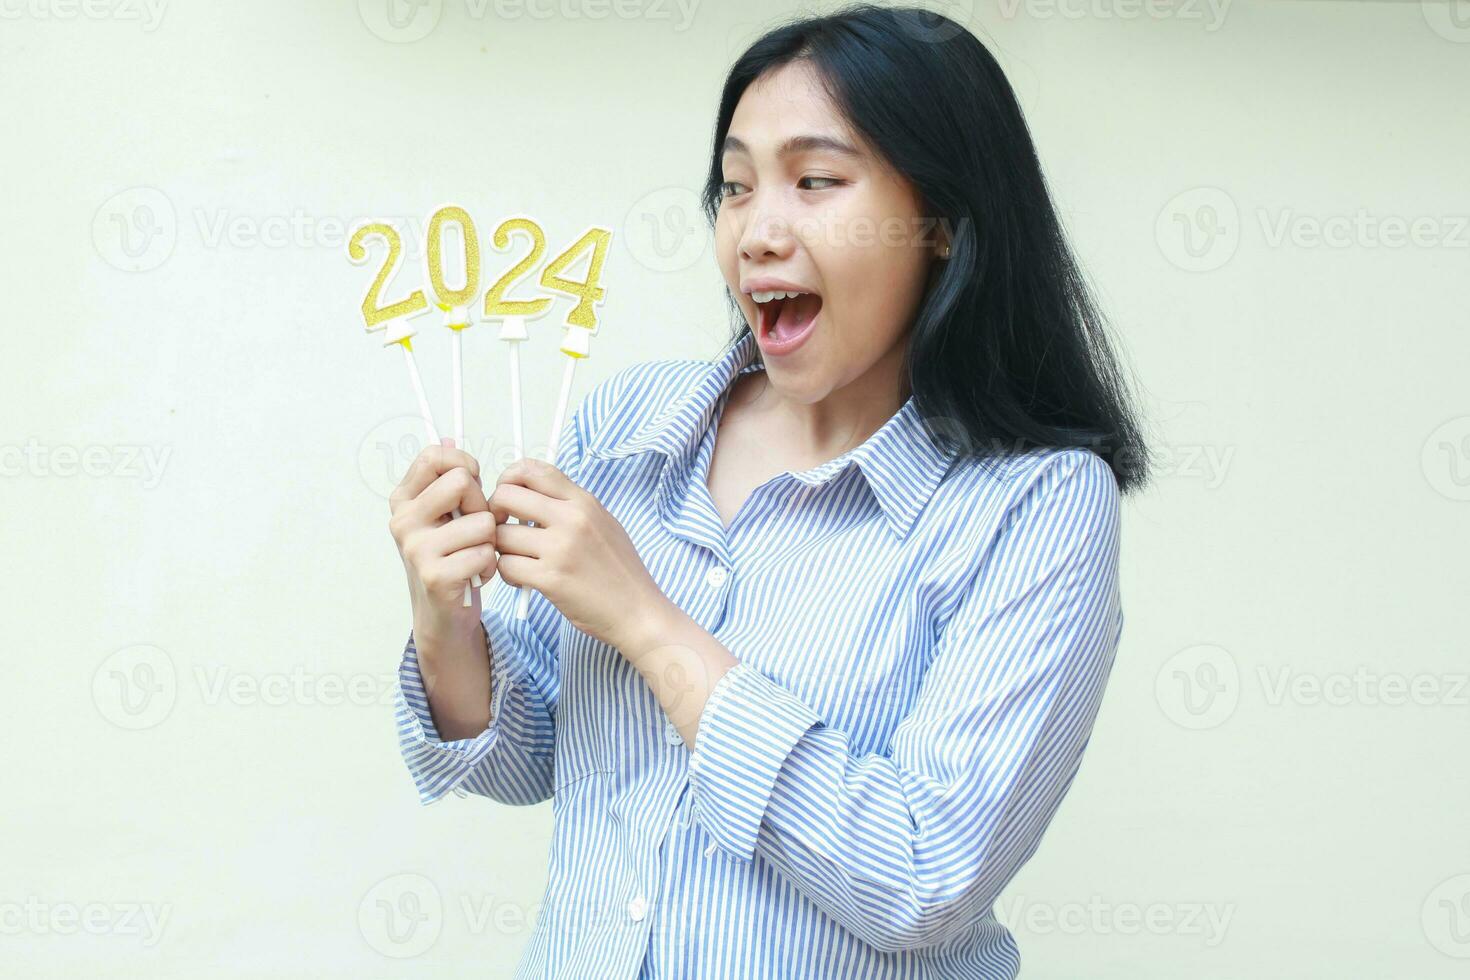 sorprendido asiático joven mujer gritando y mirando aparte a 2024 número velas sostener en mano vistiendo casual azul rayas camisa, aislado en blanco, nuevo años víspera celebracion foto